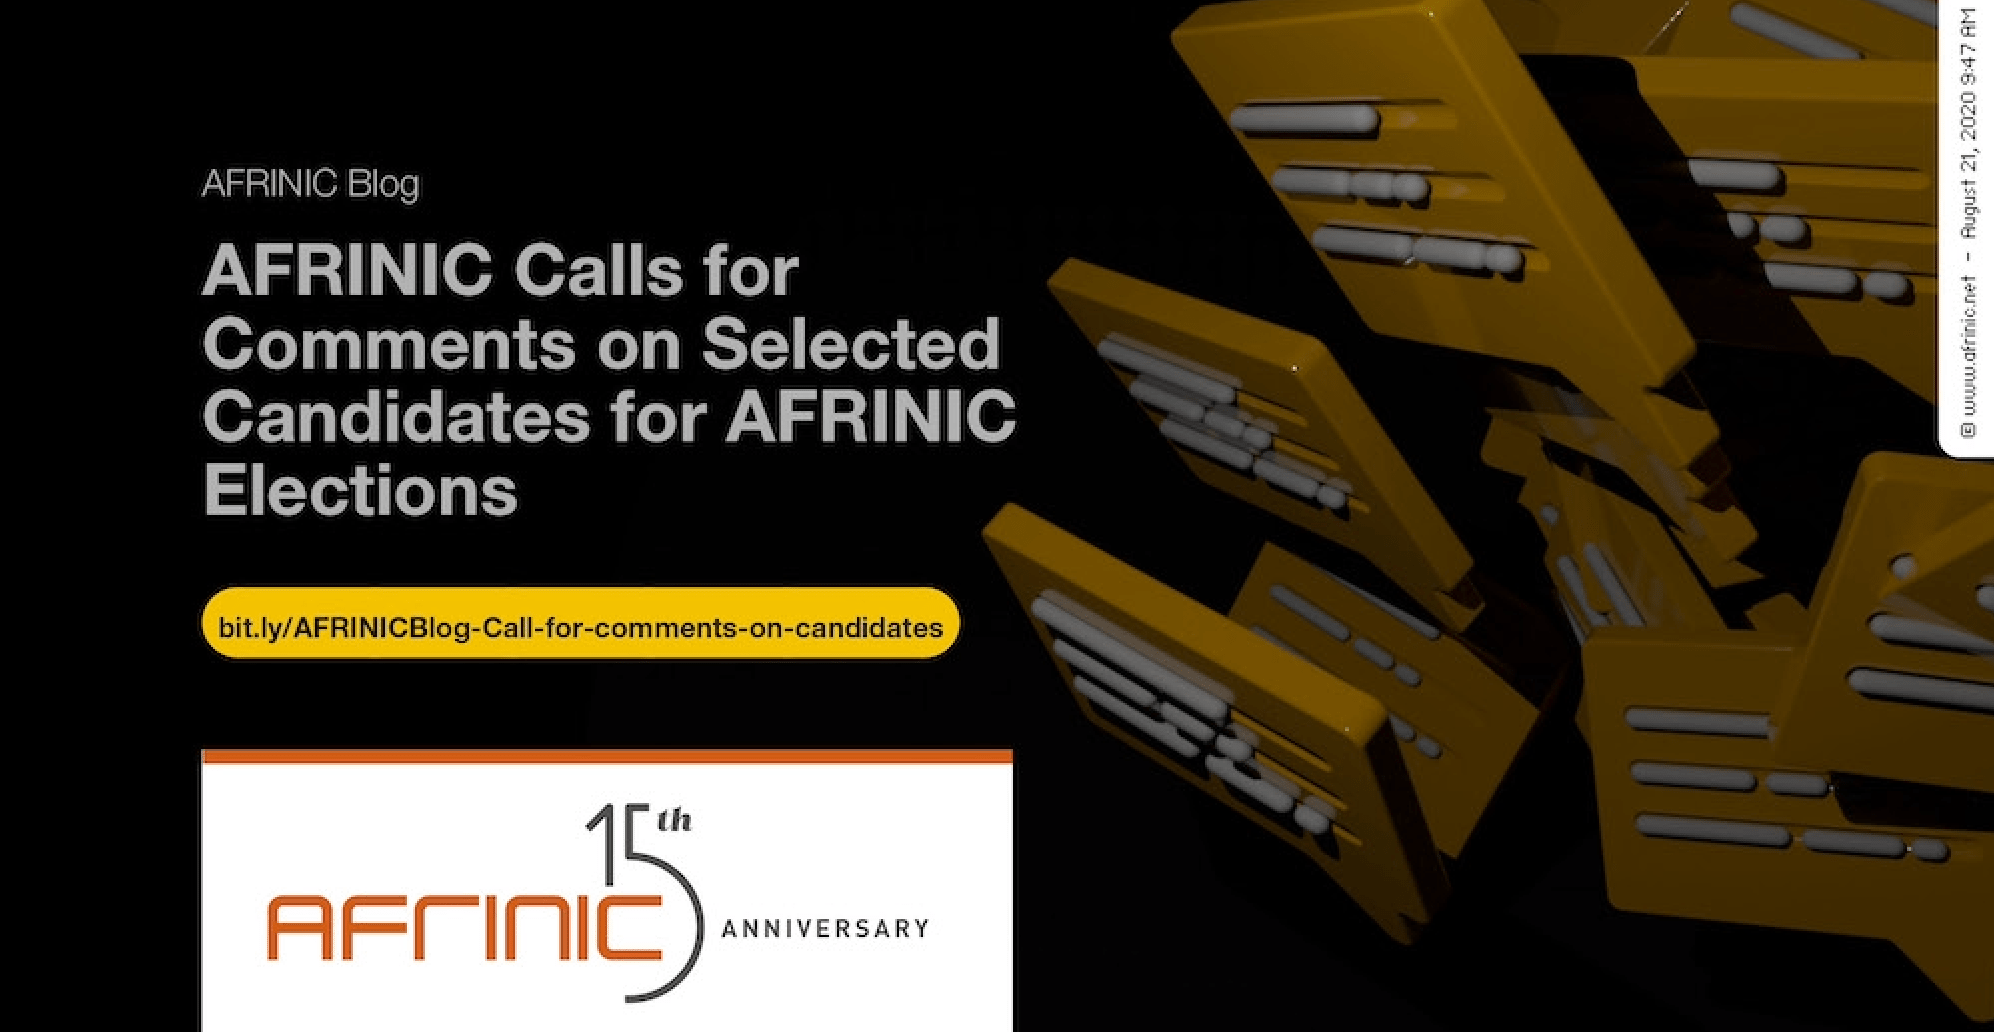 AFRINIC lance un appel à commentaires sur les candidats sélectionnés pour les élections AFRINIC